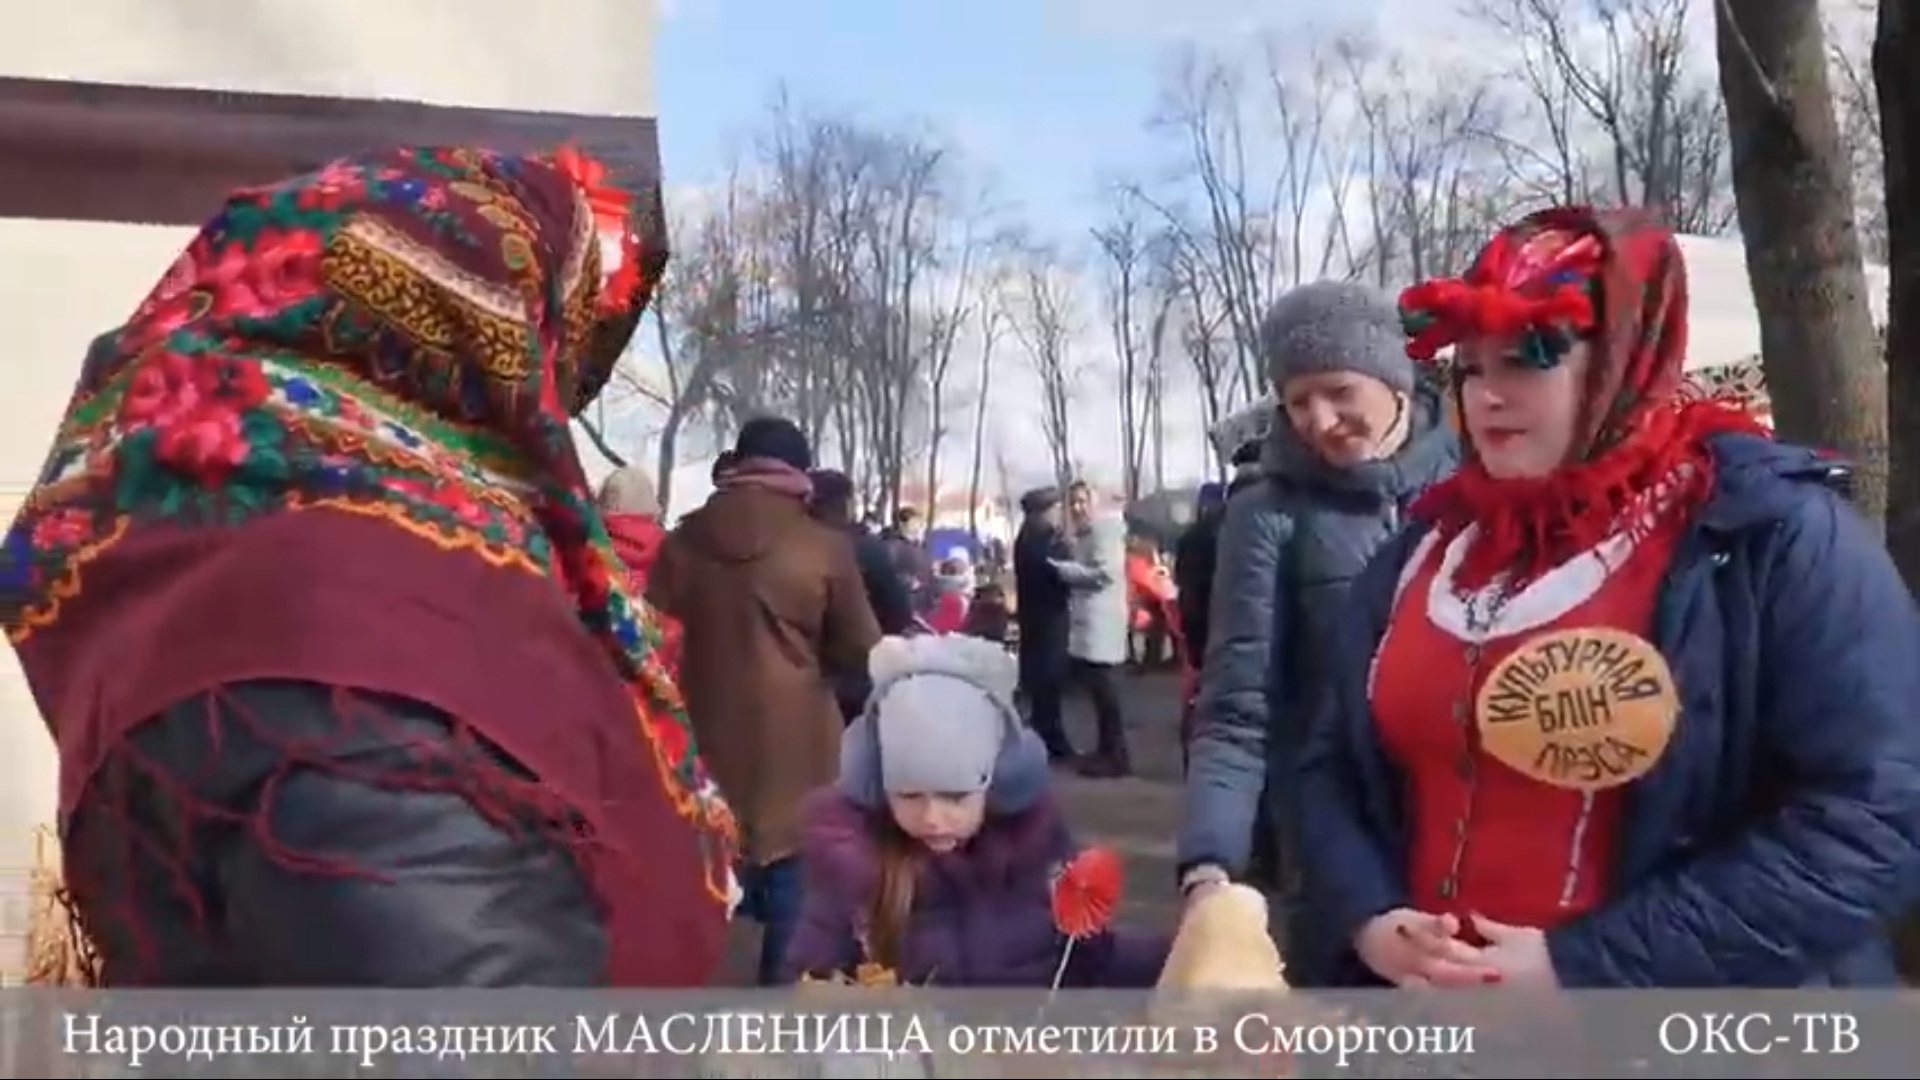 Народный праздник МАСЛЕНИЦА отметили в Сморгони